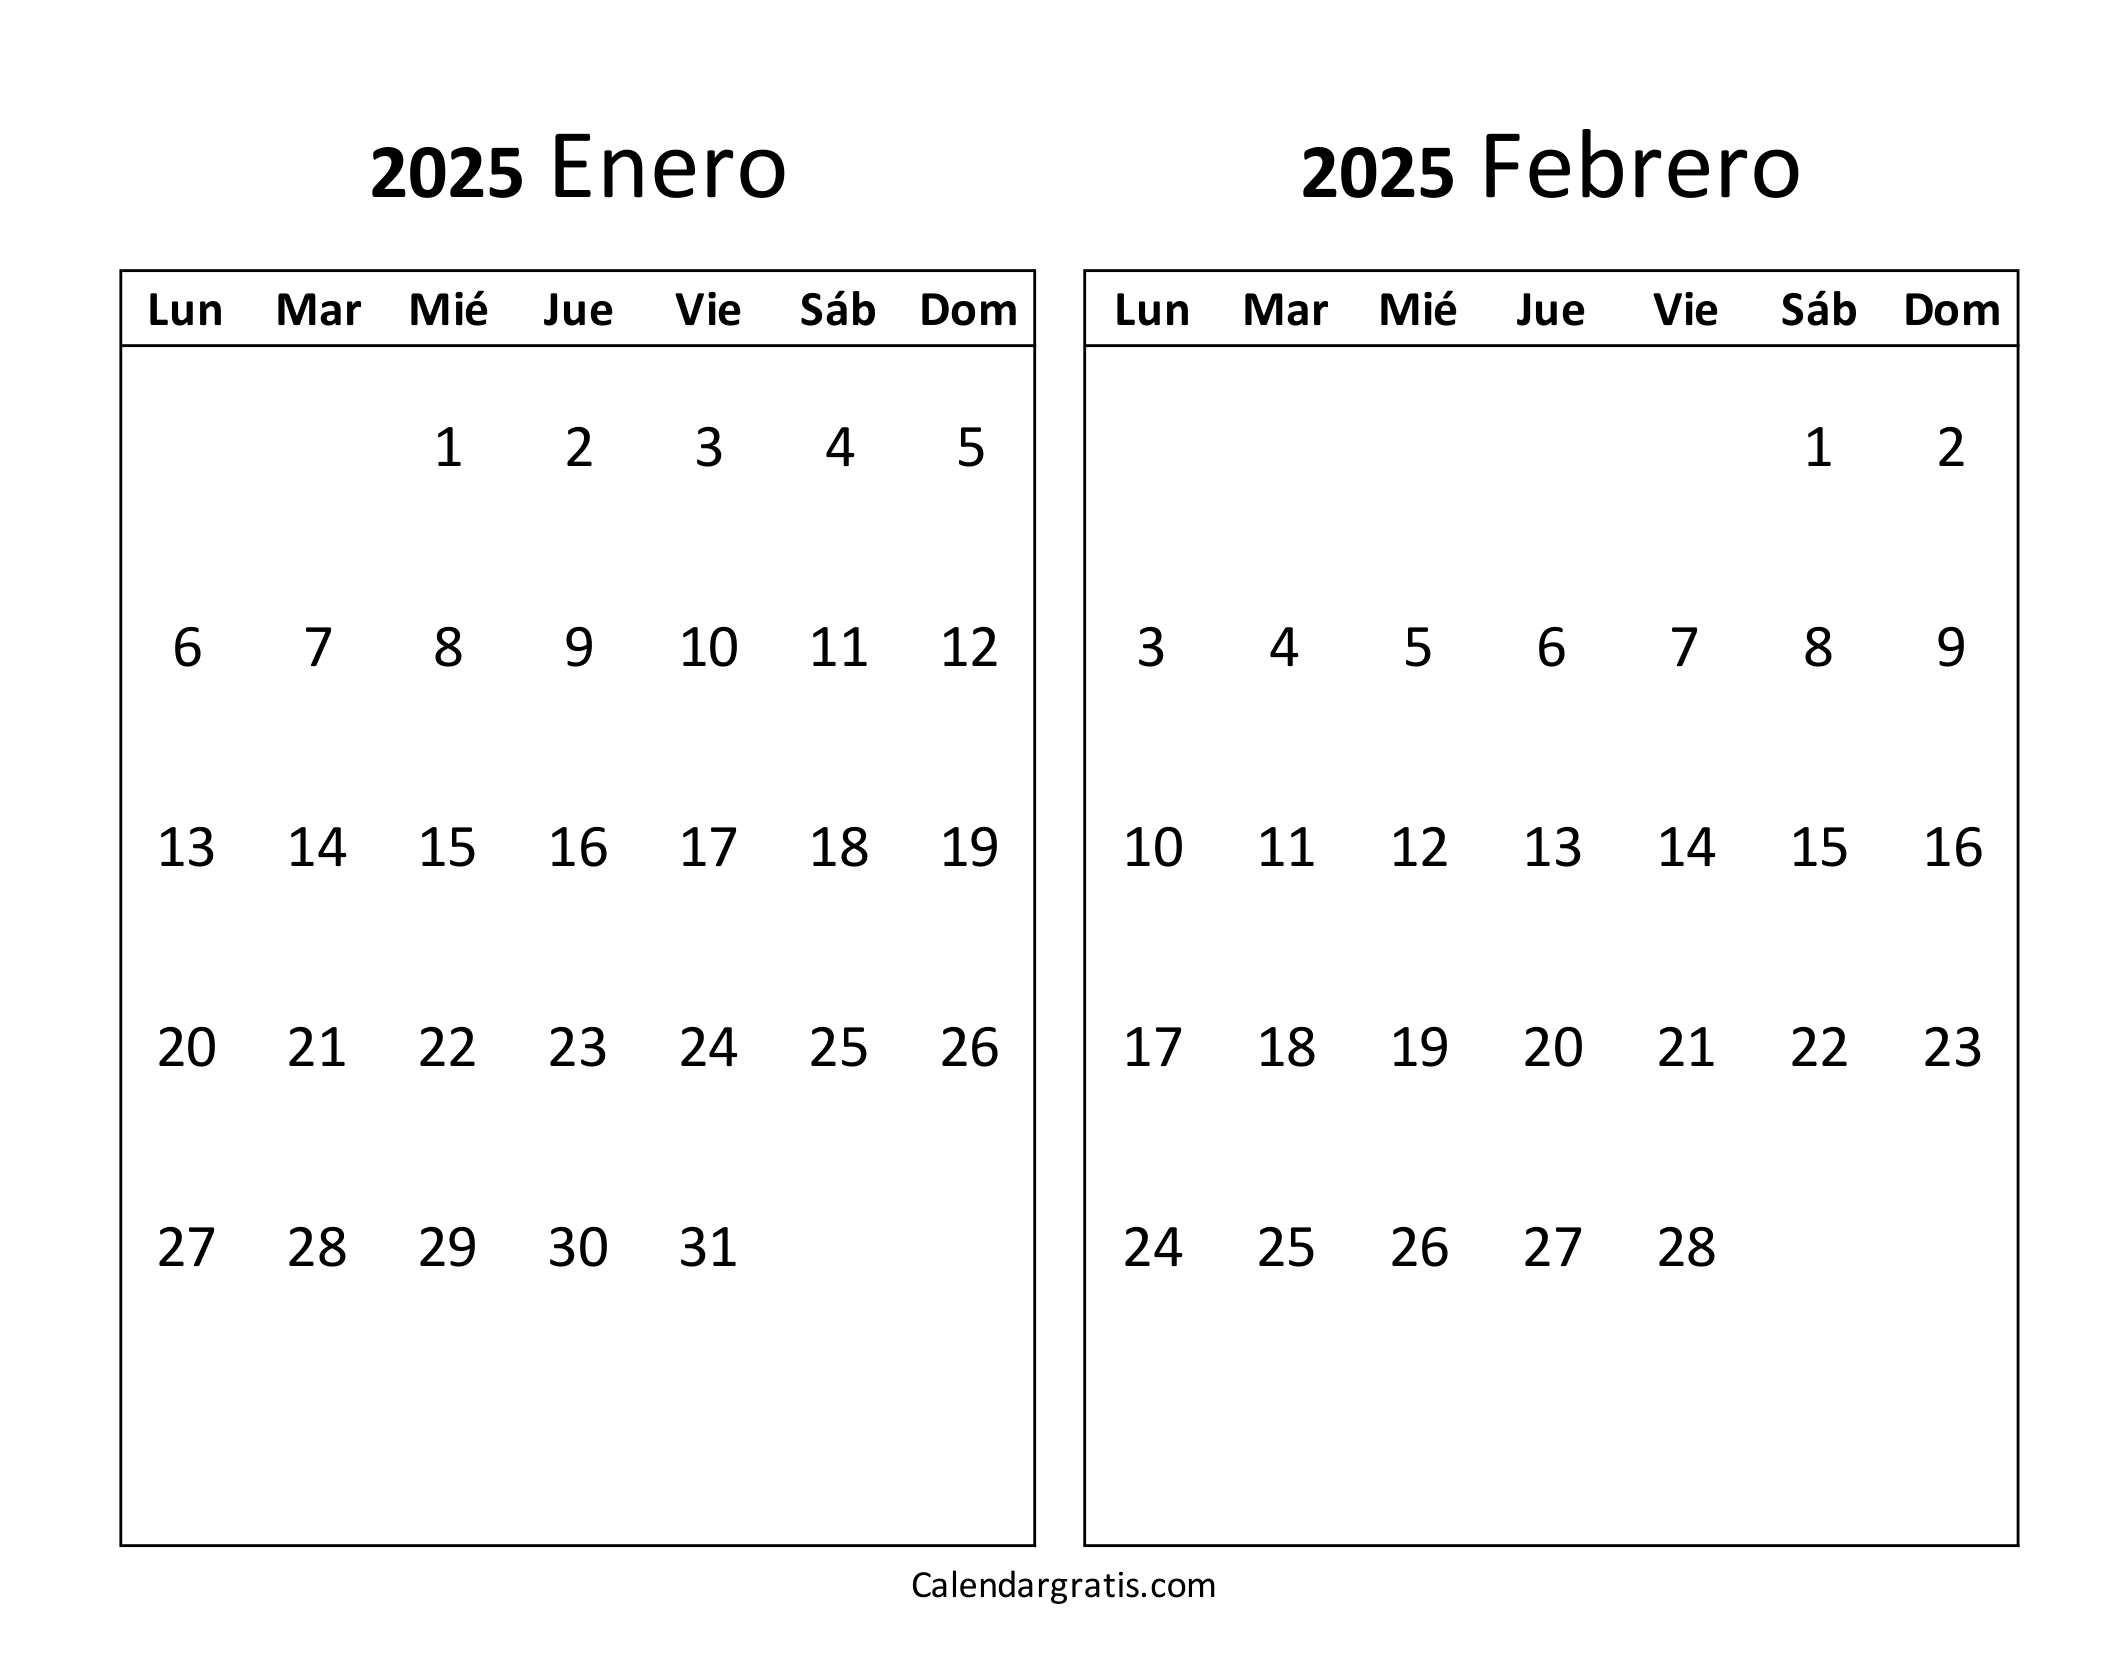 Calendario enero febrero 2025